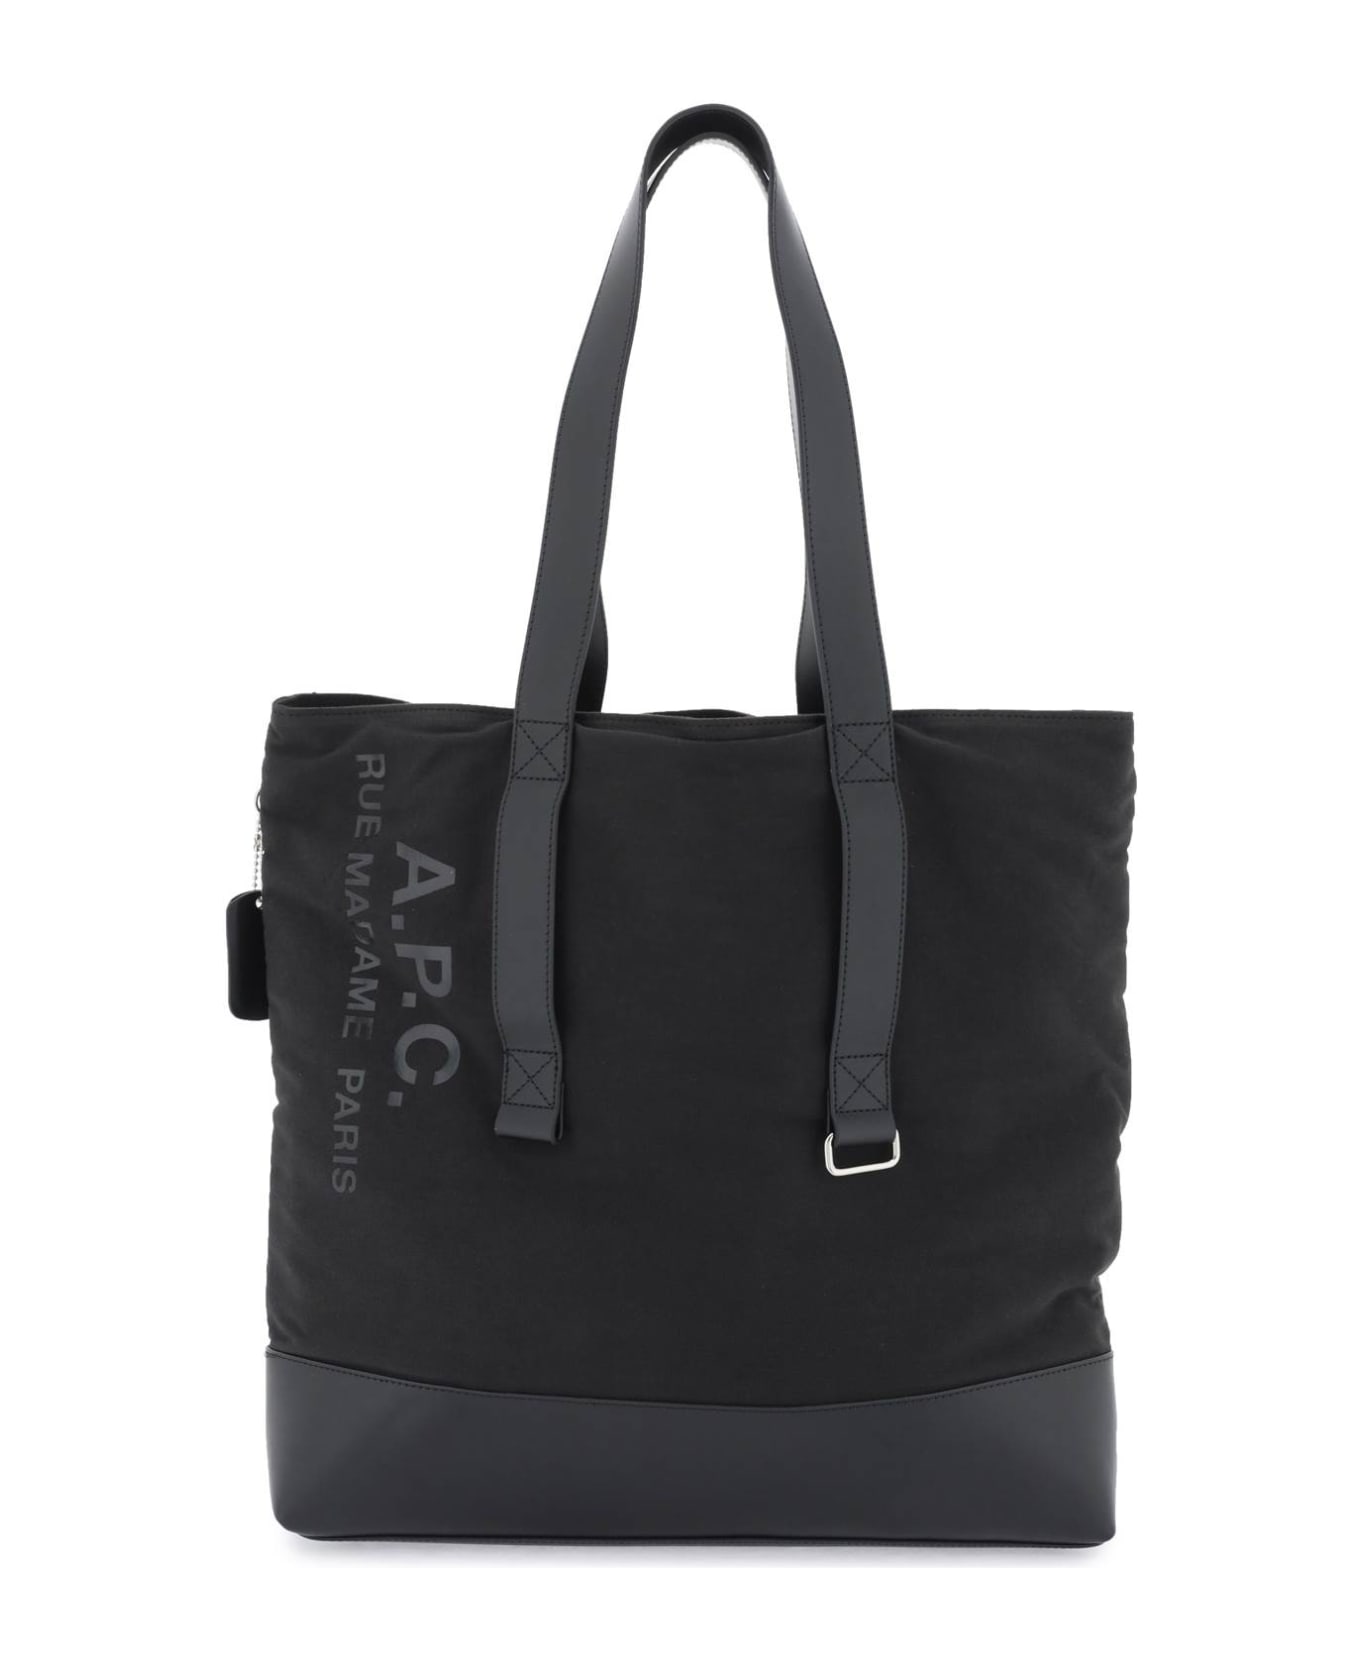 A.P.C. Sense Tote Bag - black